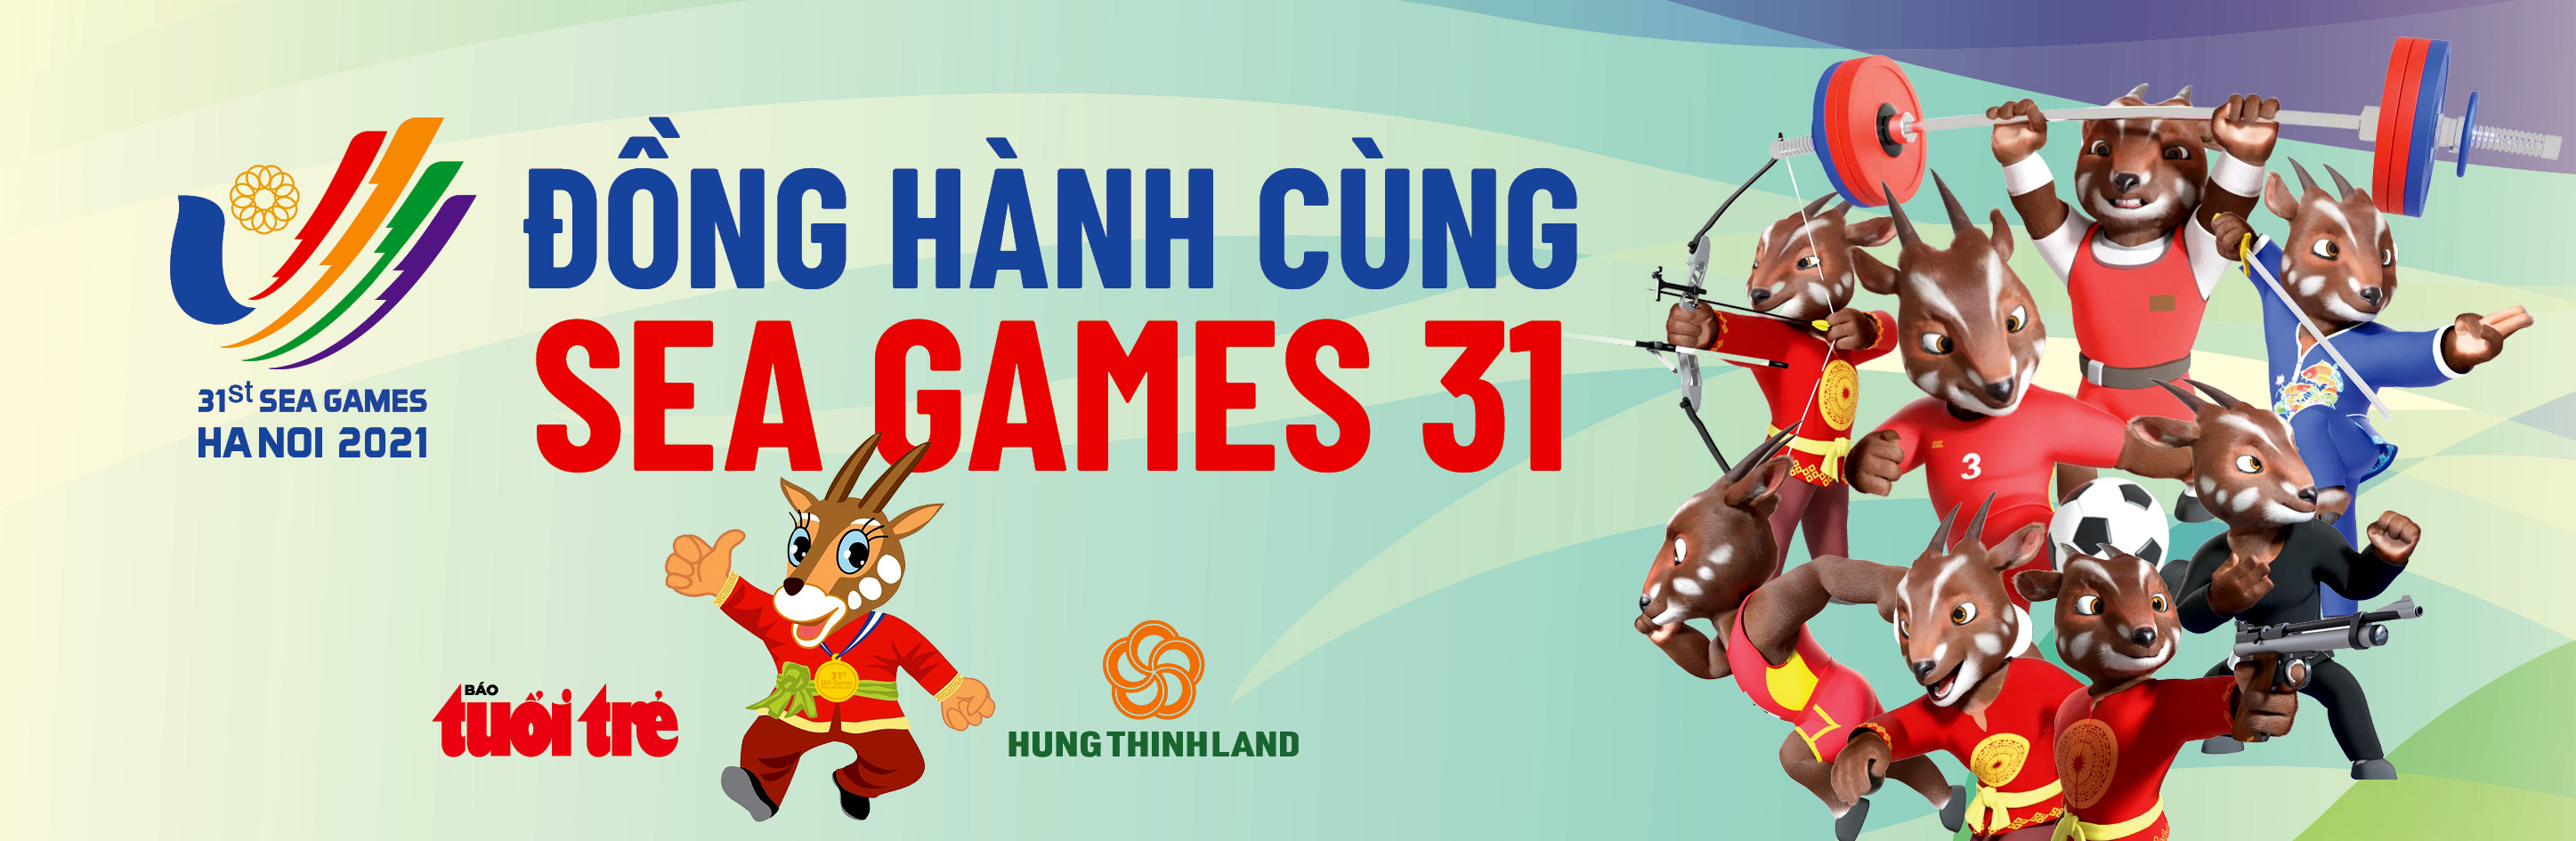 Lịch thi đấu chung kết bóng đá nữ SEA Games 31: Việt Nam - Thái Lan